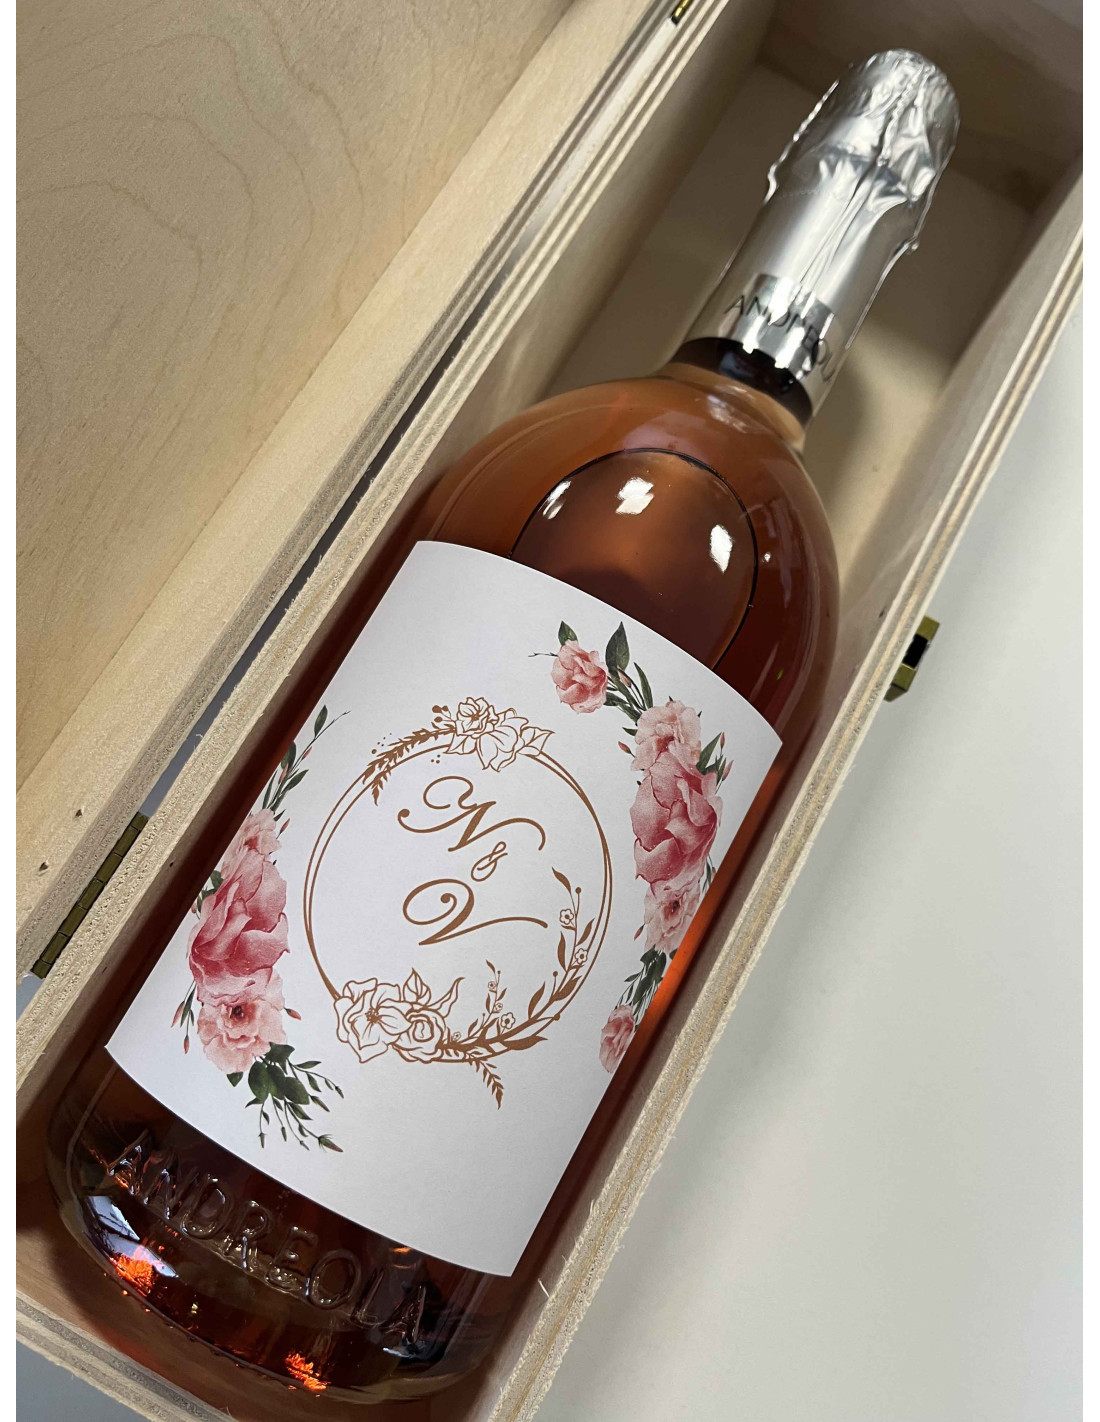 Bottiglia Spumante Rosé Personalizzata, crea l'etichetta!